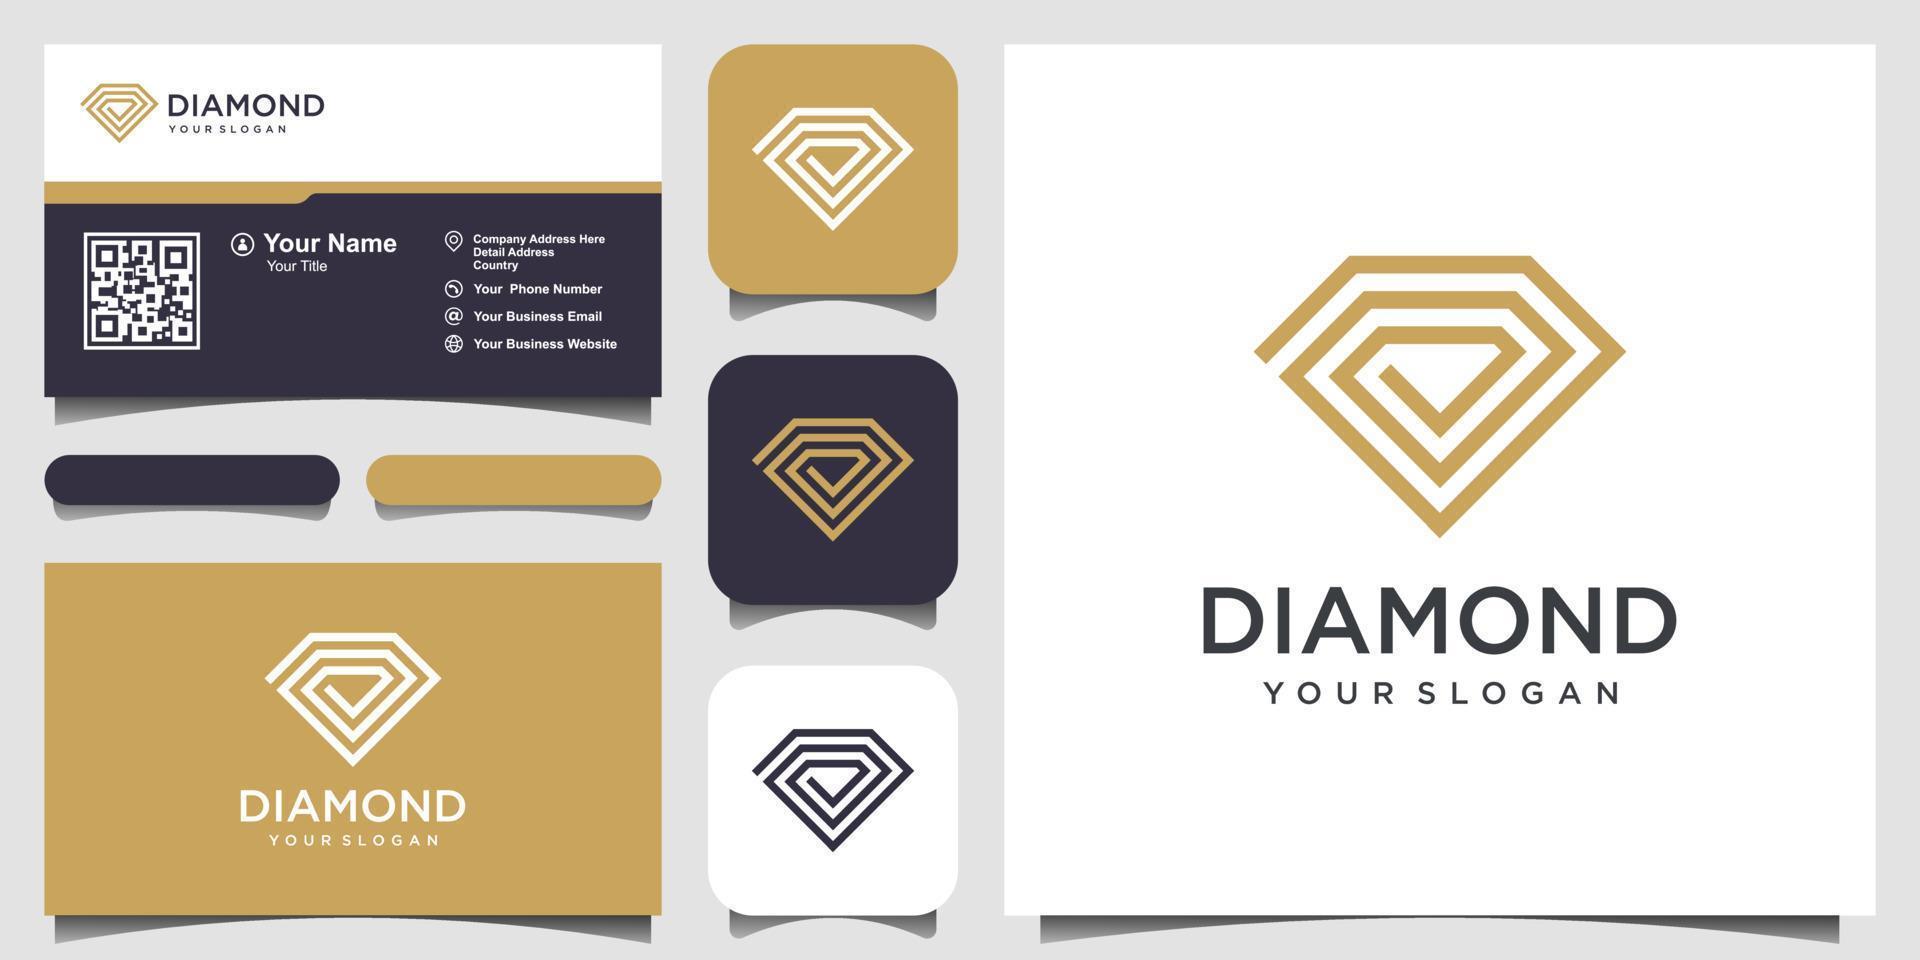 creatieve diamant concept logo ontwerpsjabloon en visitekaartje ontwerp. diamantgroep, team, gemeenschap vector